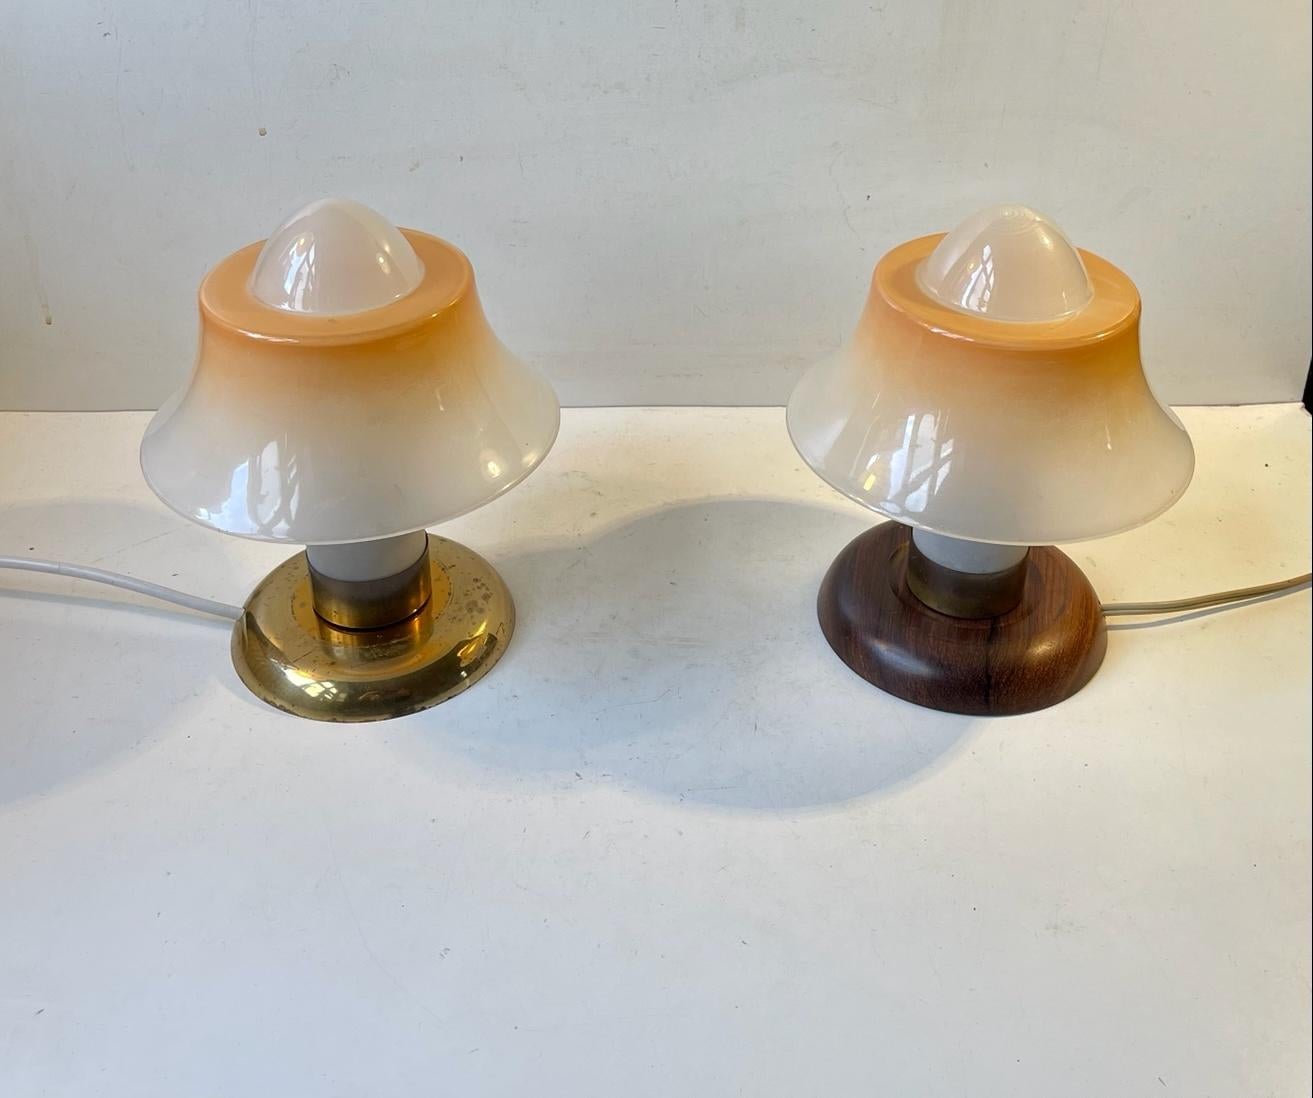 Fog & Mørup Small Fried-Egg Table Lamps, Denmark 1950s For Sale 2